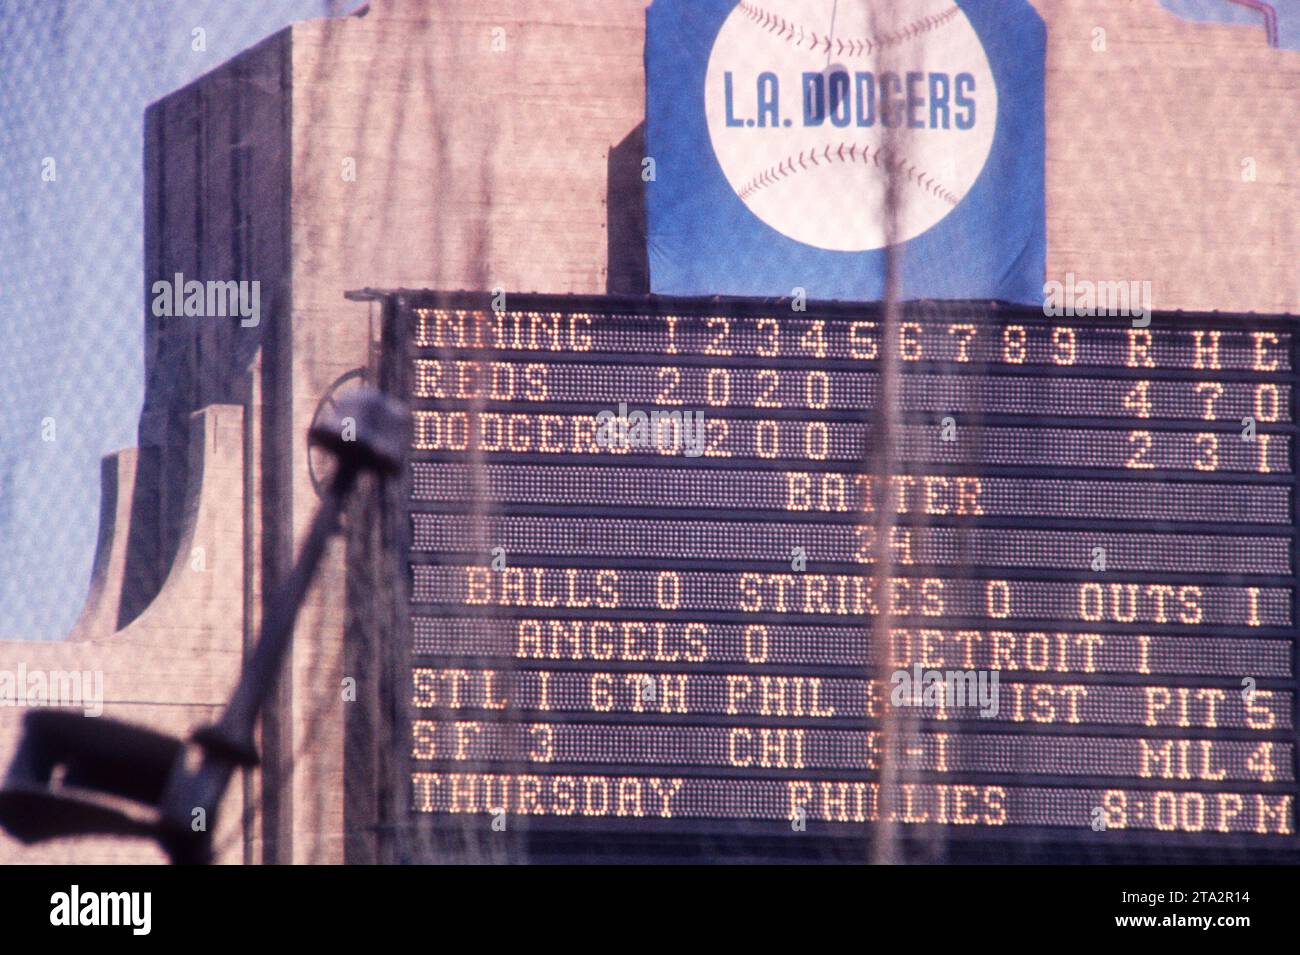 LOS ANGELES, KALIFORNIEN - 9. JULI: Allgemeine Ansicht der Anzeigetafel während eines MLB-Spiels zwischen den Cincinnati Reds und den Los Angeles Dodgers am 9. Juli 1961 im Los Angeles Memorial Coliseum in Los Angeles, Kalifornien. (Foto: Hy Peskin) Stockfoto